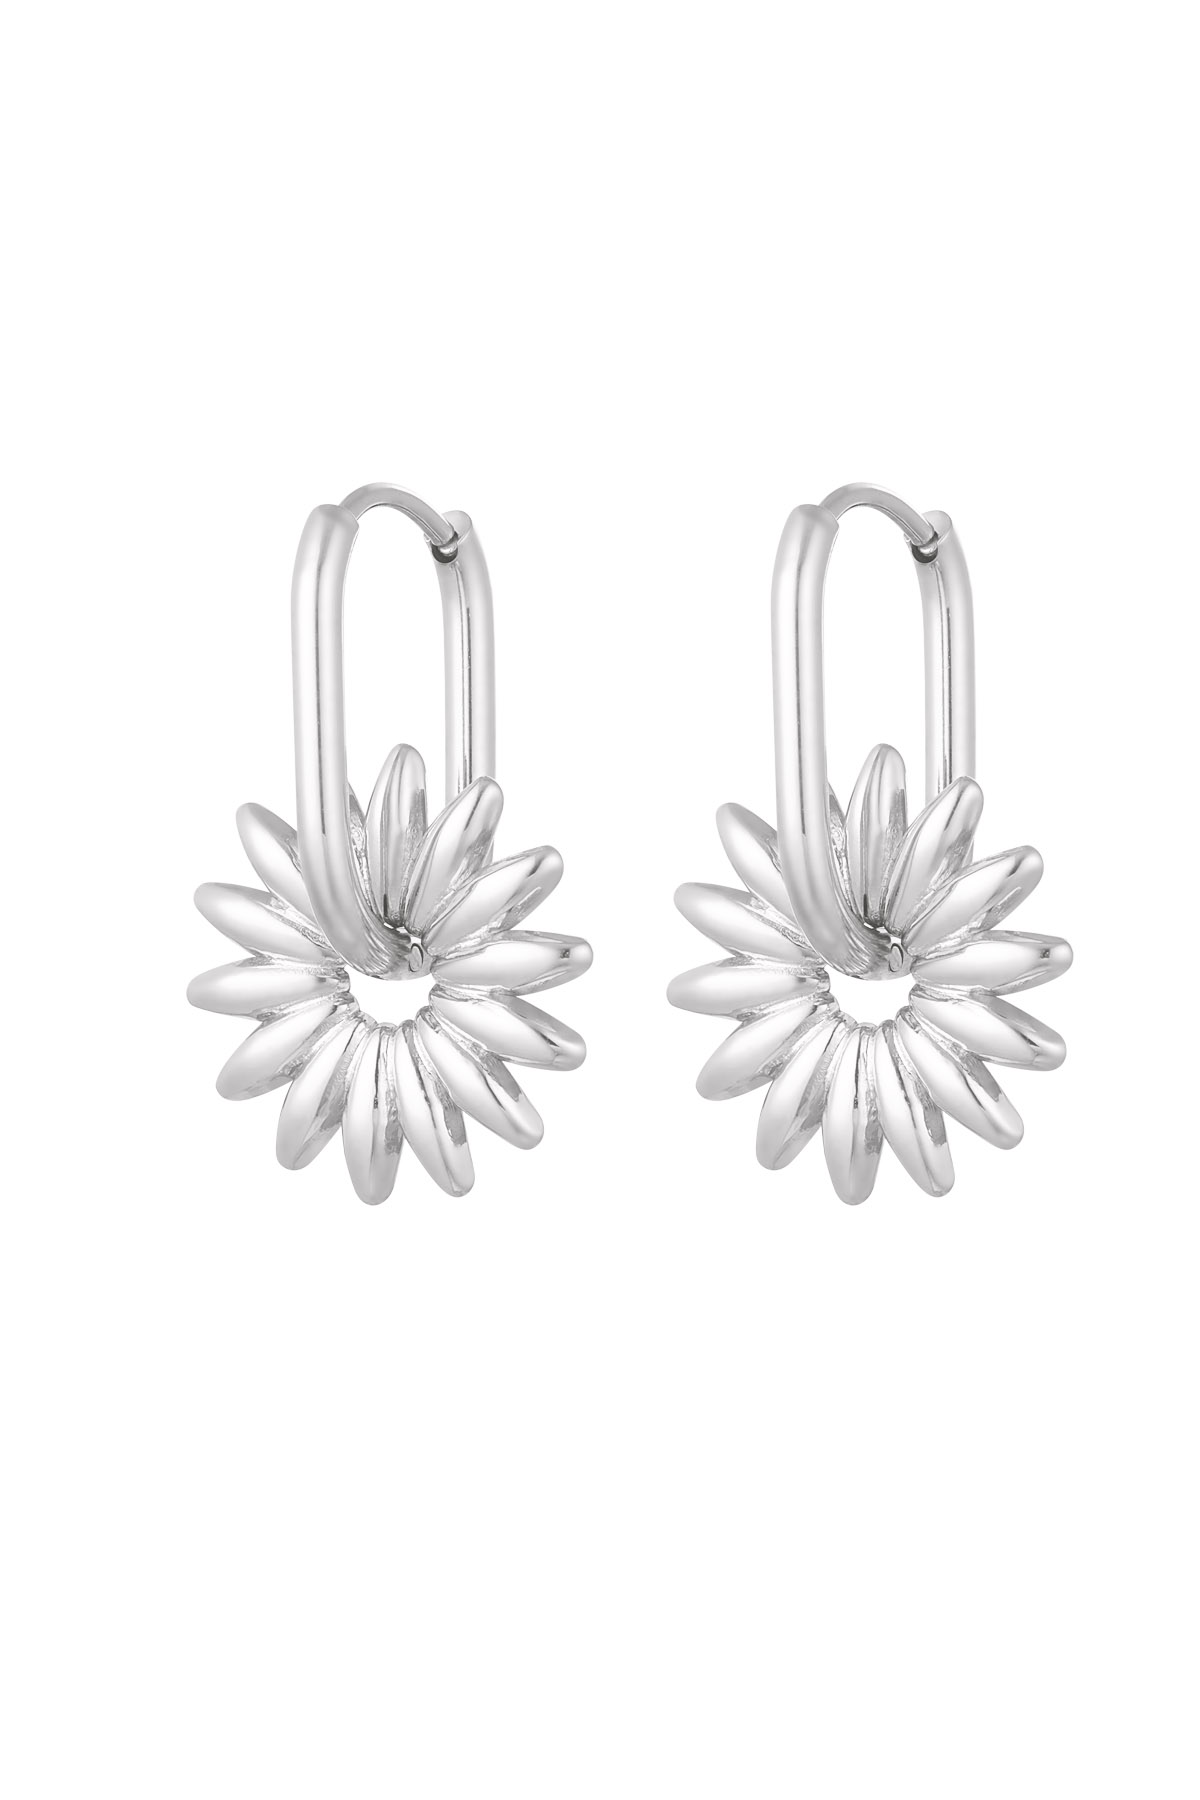 Längliche Ohrringe mit Blume – Silber